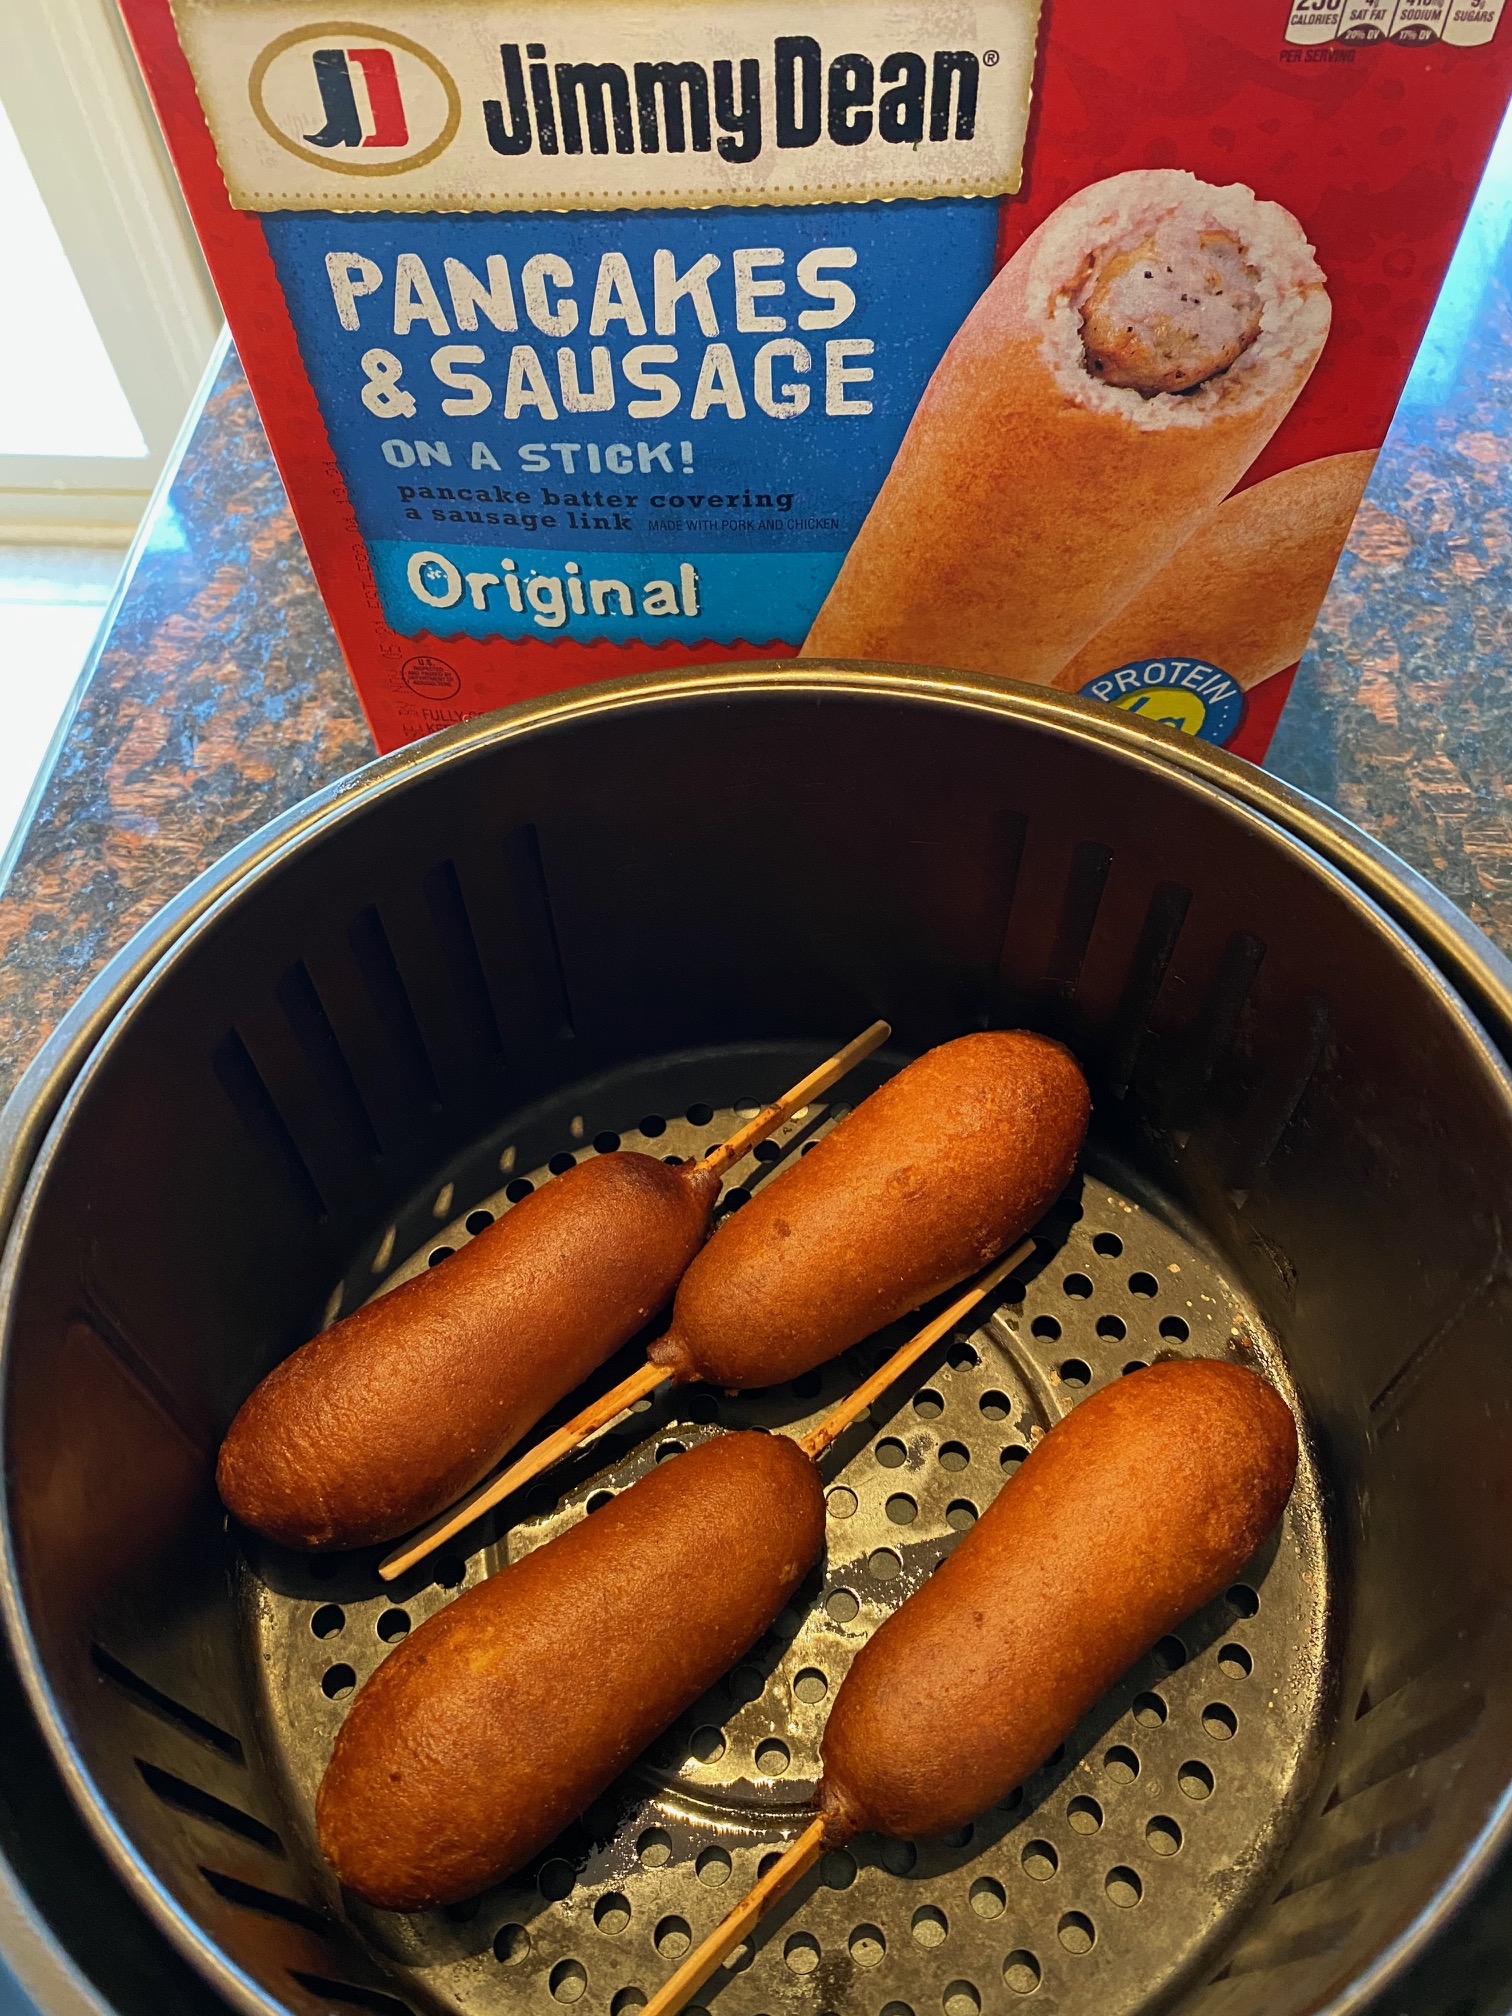 one sausage